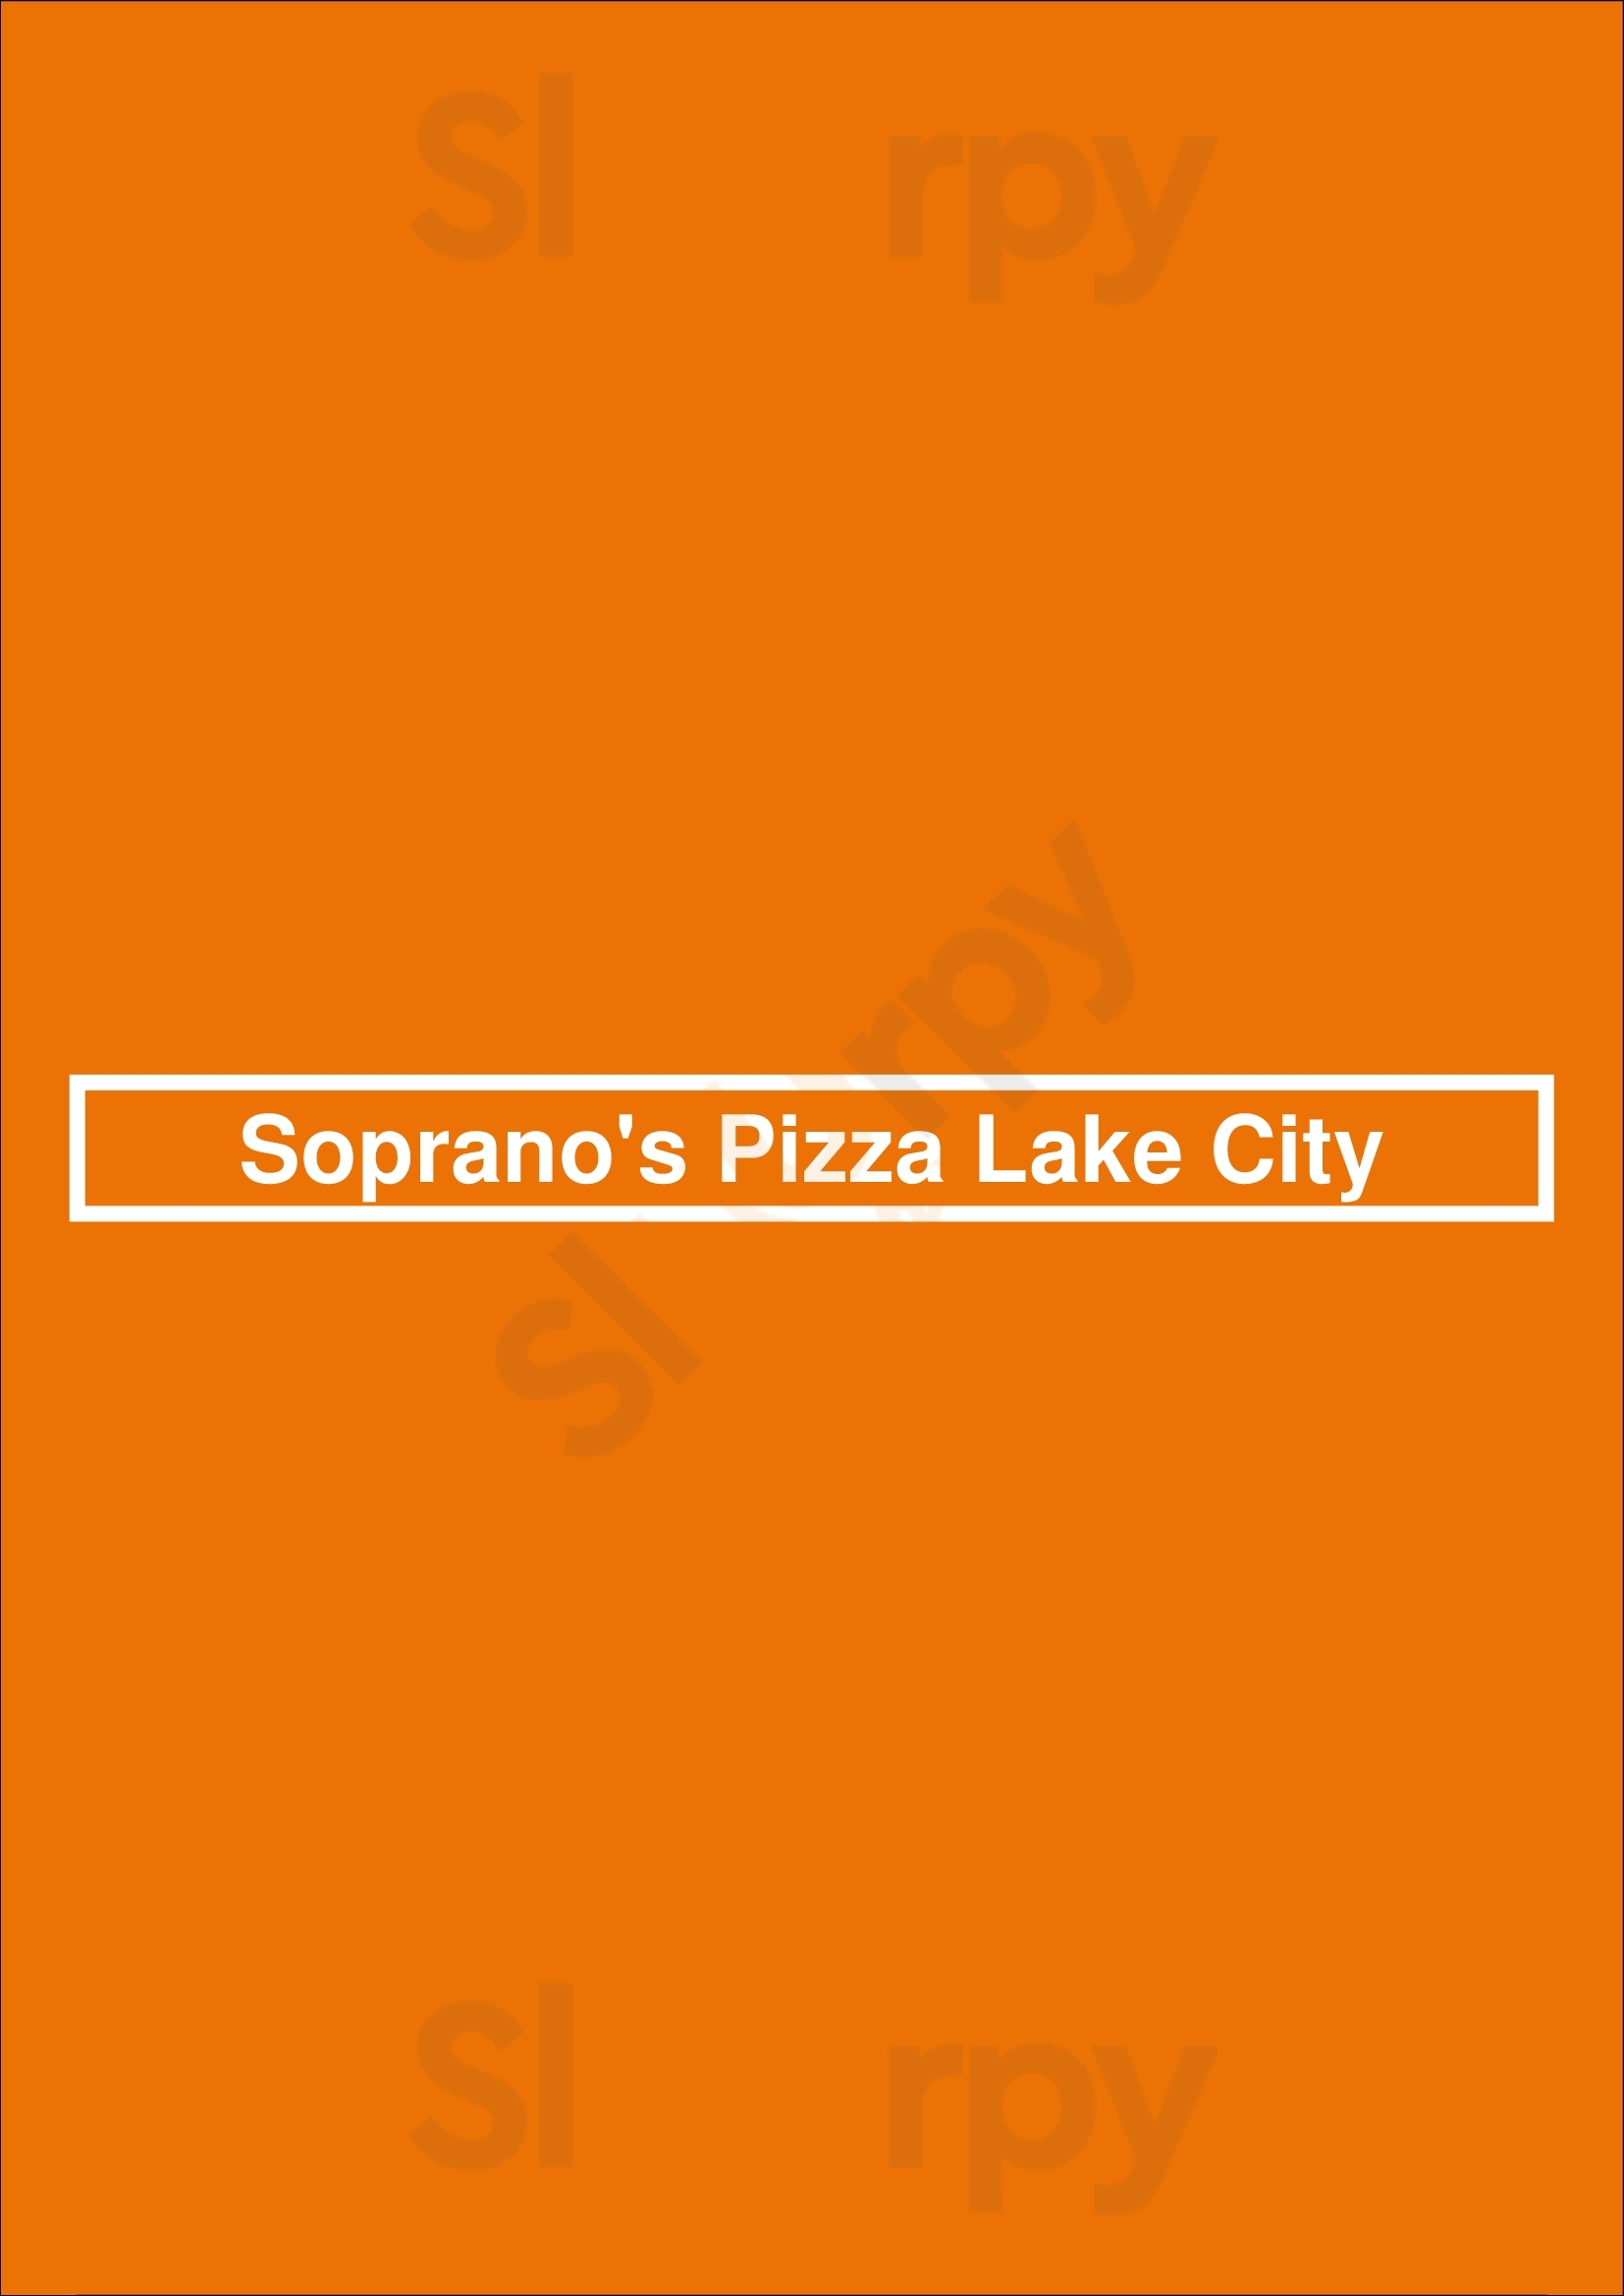 Soprano's Pizza Lake City Seattle Menu - 1